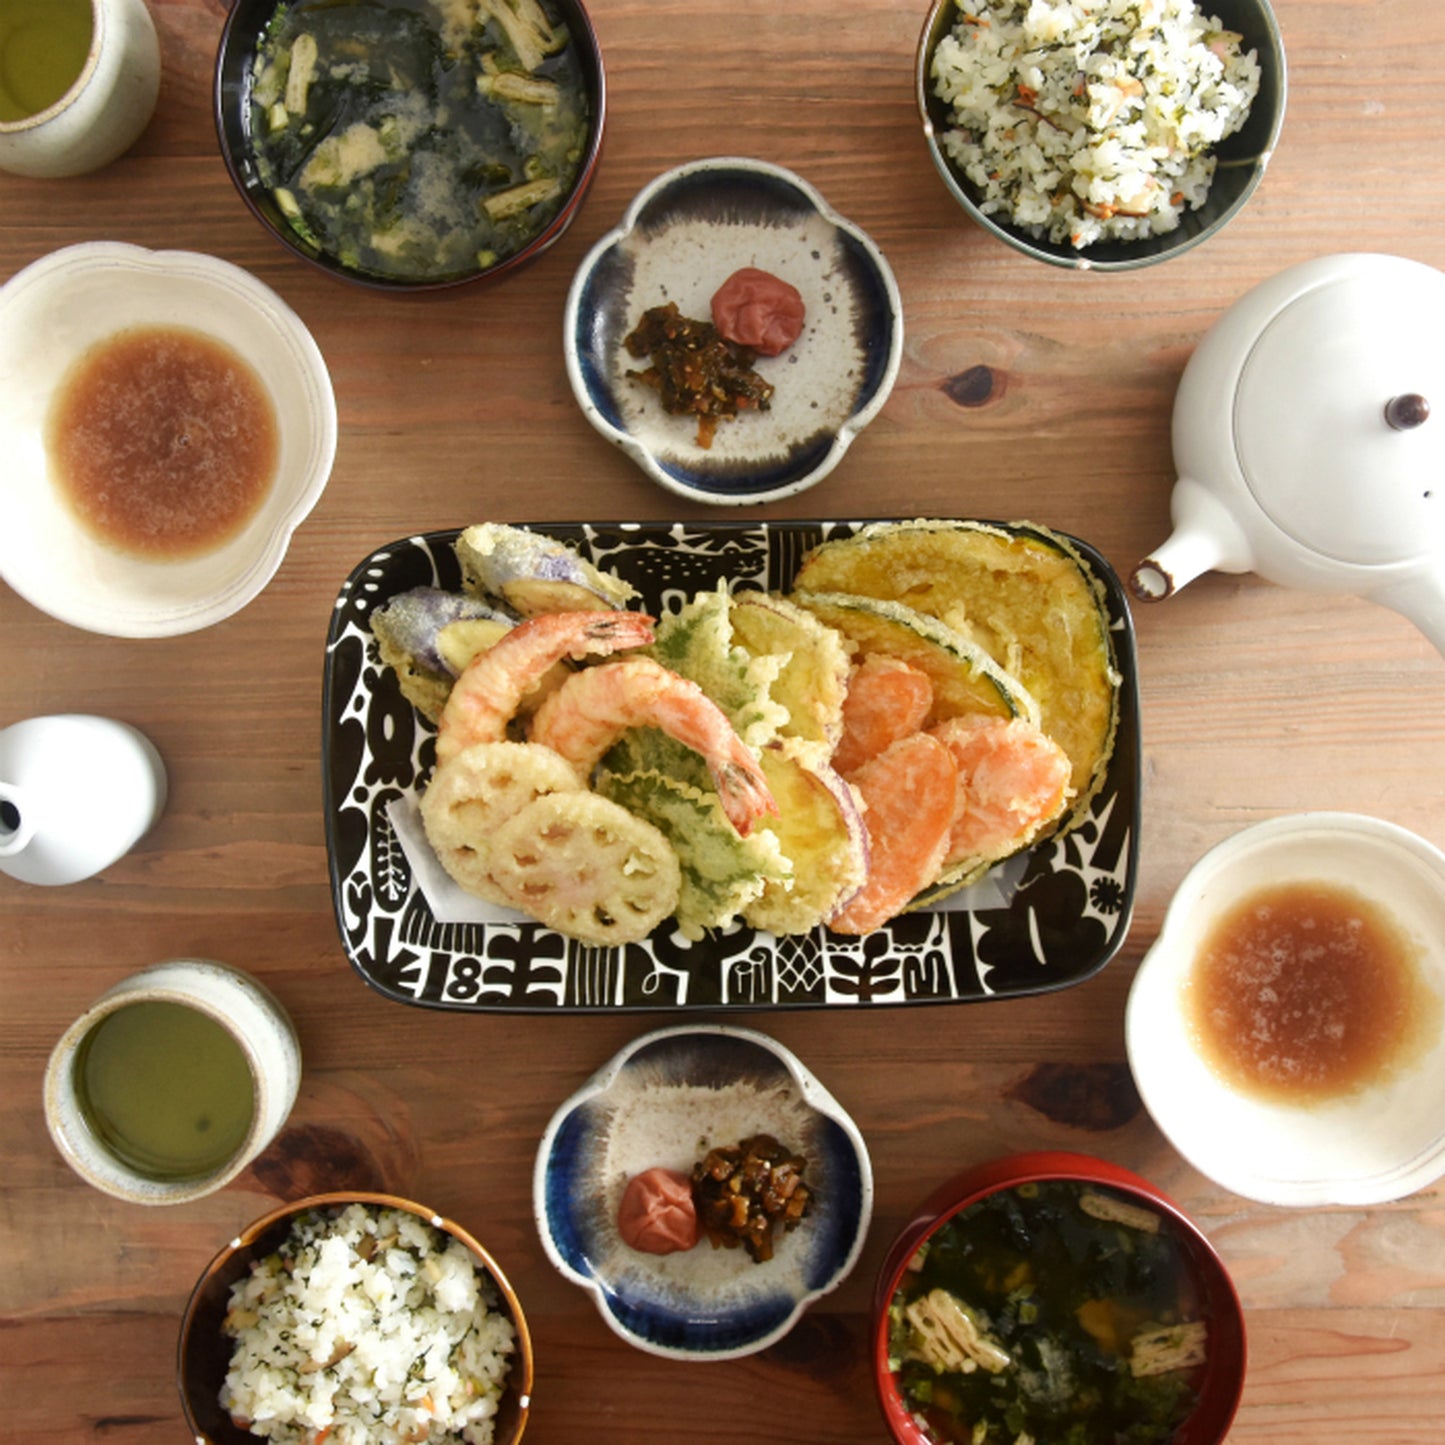 [natural69] [Utopia] [long deep bowl] Hasami ware pasta dish large bowl serving salad bowl animal stylish adult colorful cute